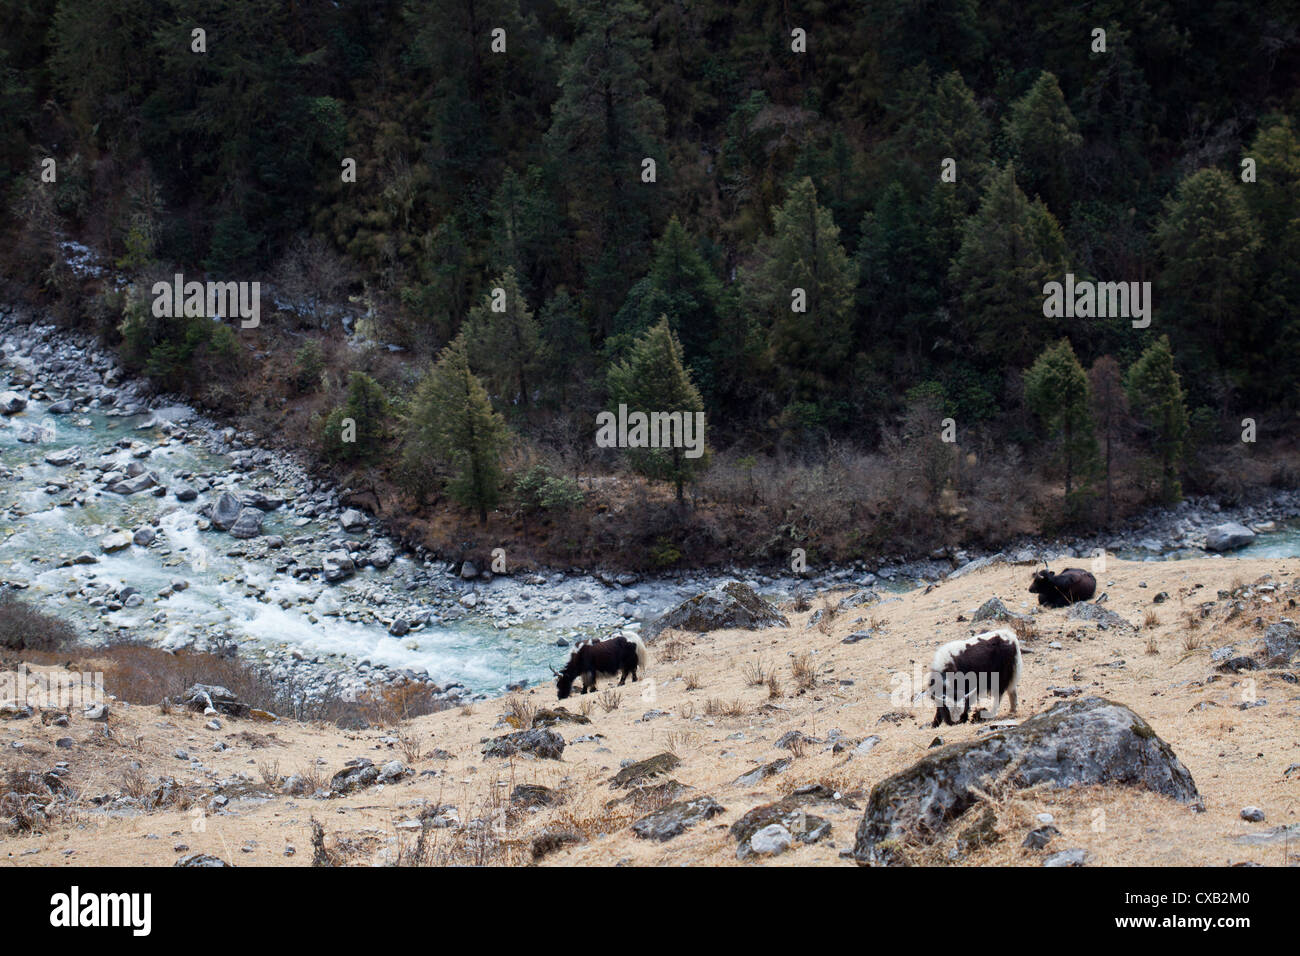 Los yaks, Bos grunniens, pastando junto a un río de montaña que fluye a través del valle de Langtang, Nepal Foto de stock